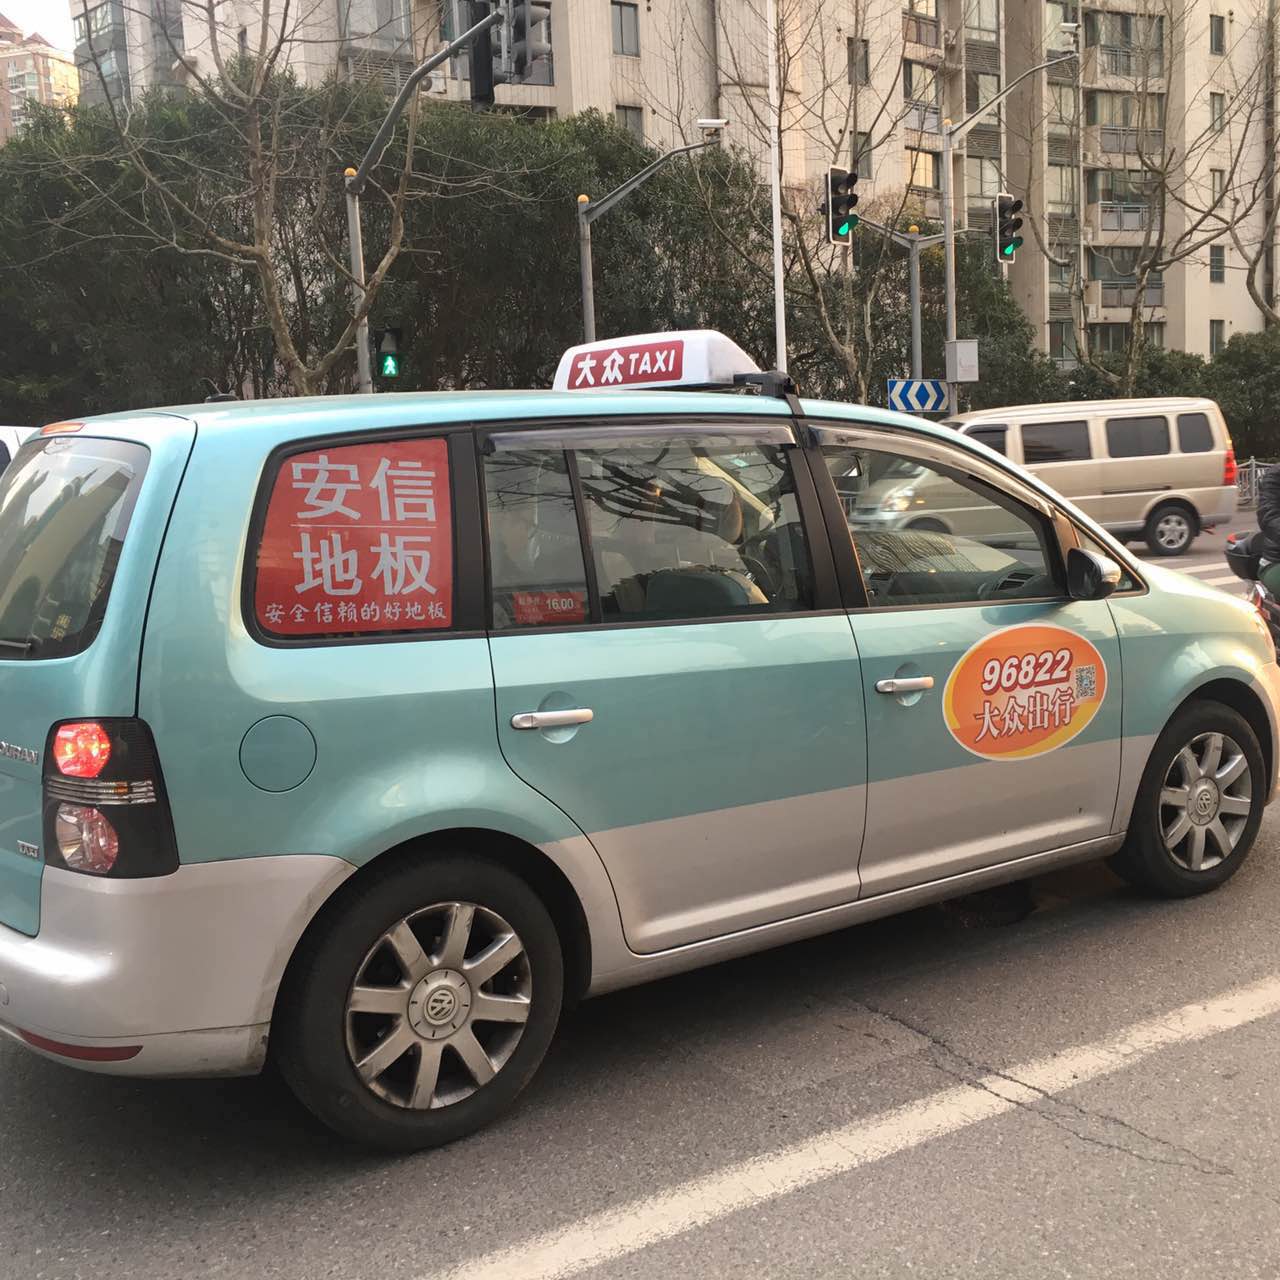 上海出租车广告 侧窗广告位全新亮相 双侧更给力 内外全覆盖